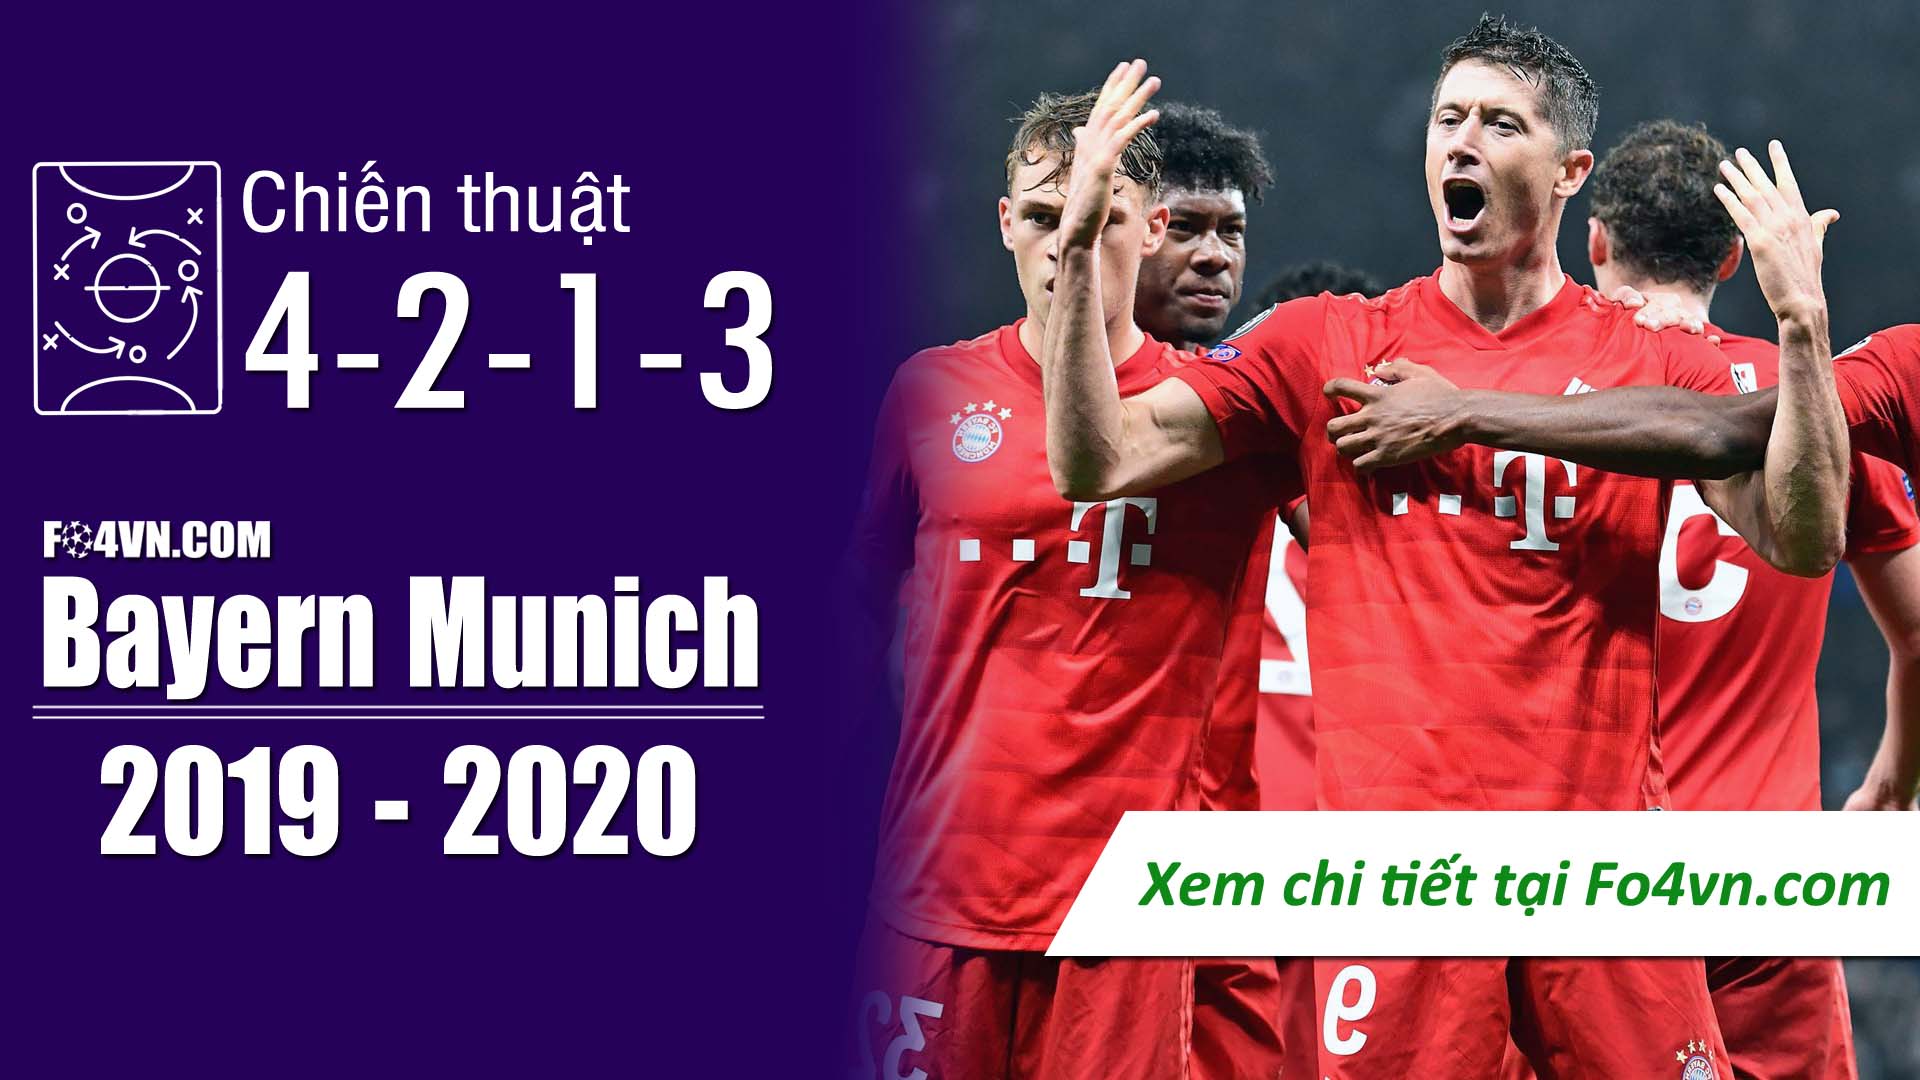 4-2-1-3 với hùm xám Bayern Munich